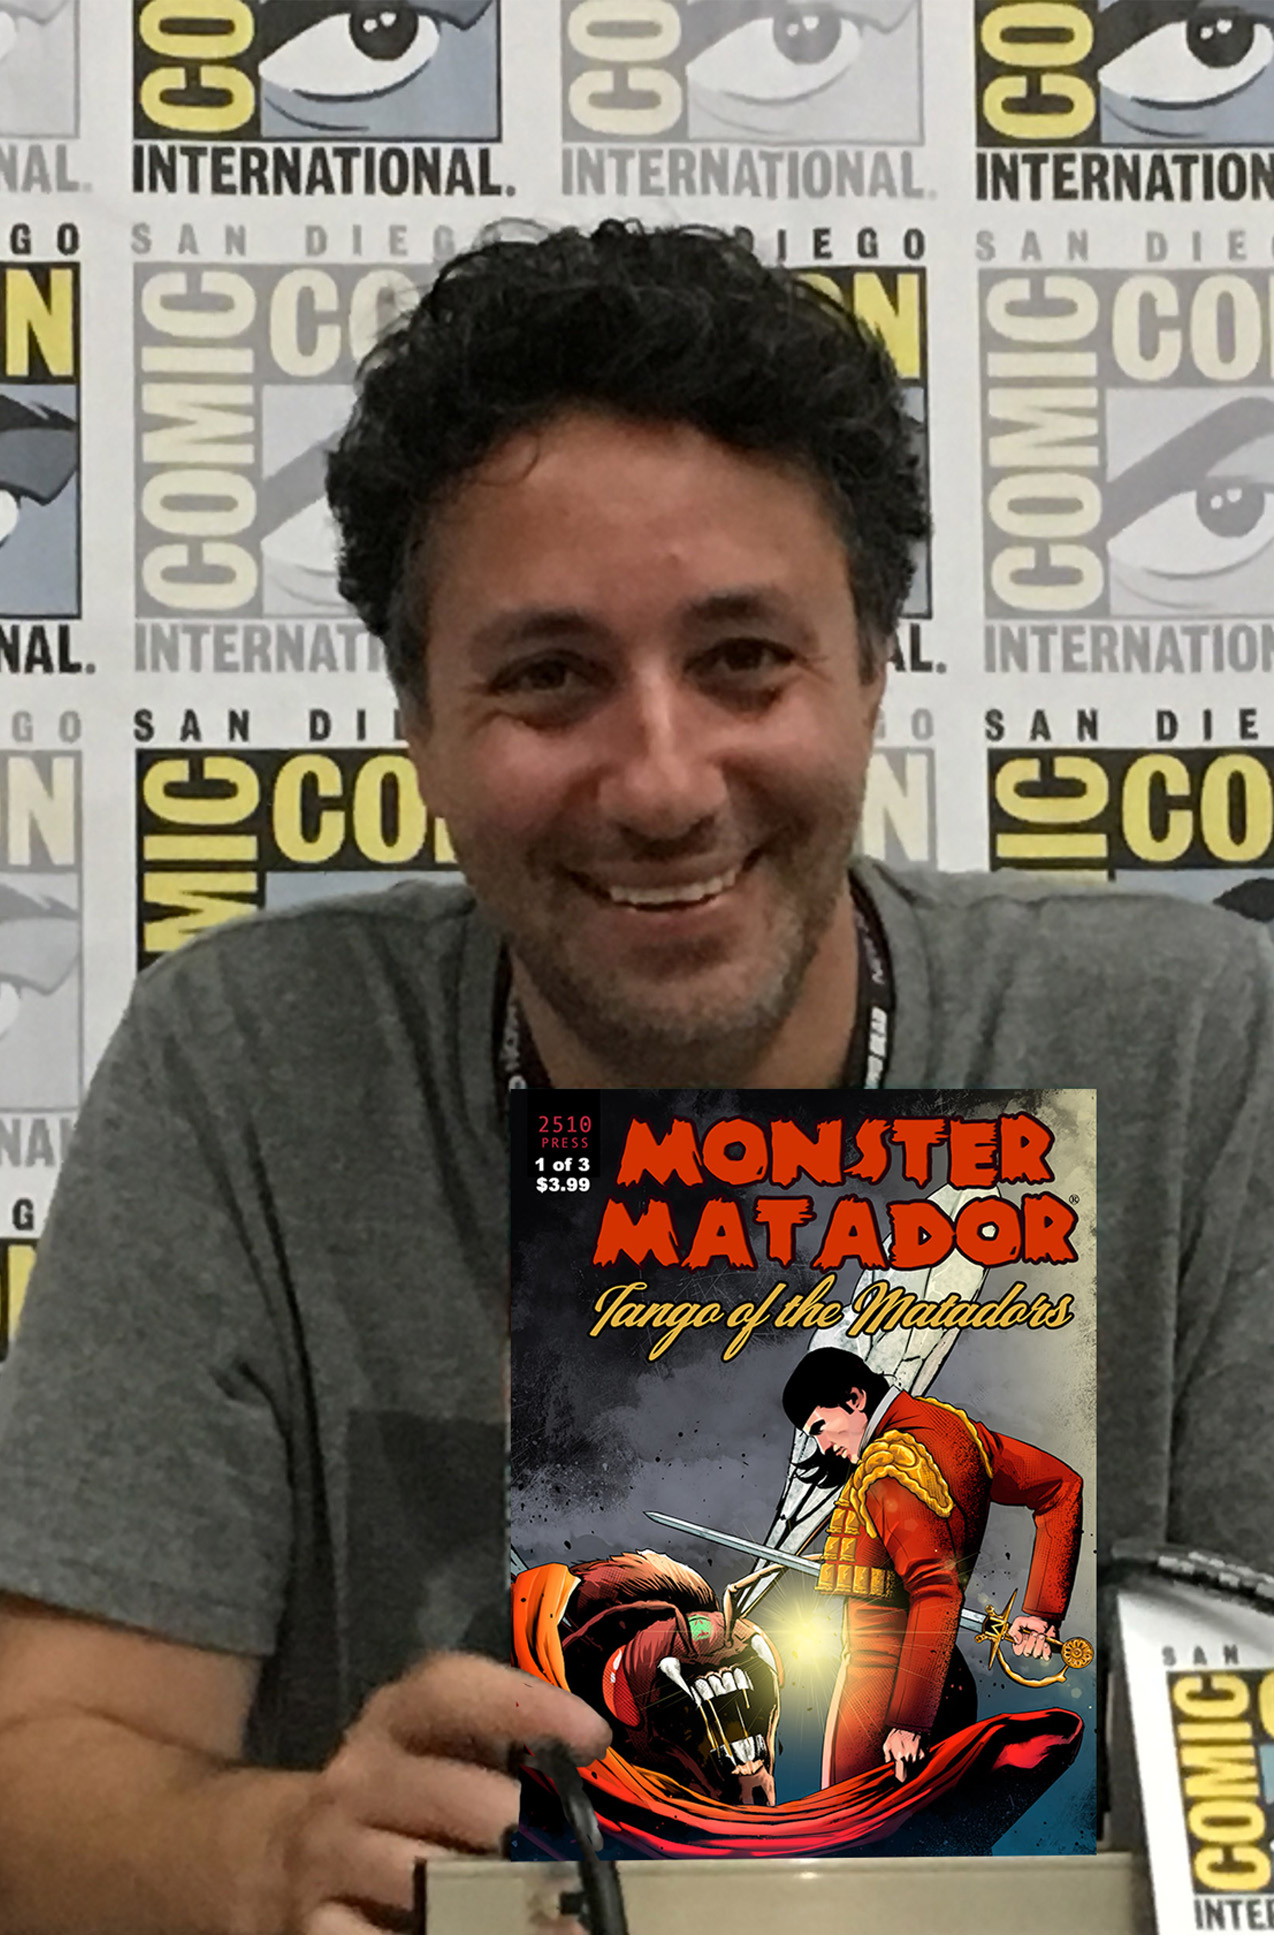 Interview: Steven Prince of ‘Monster Matador’